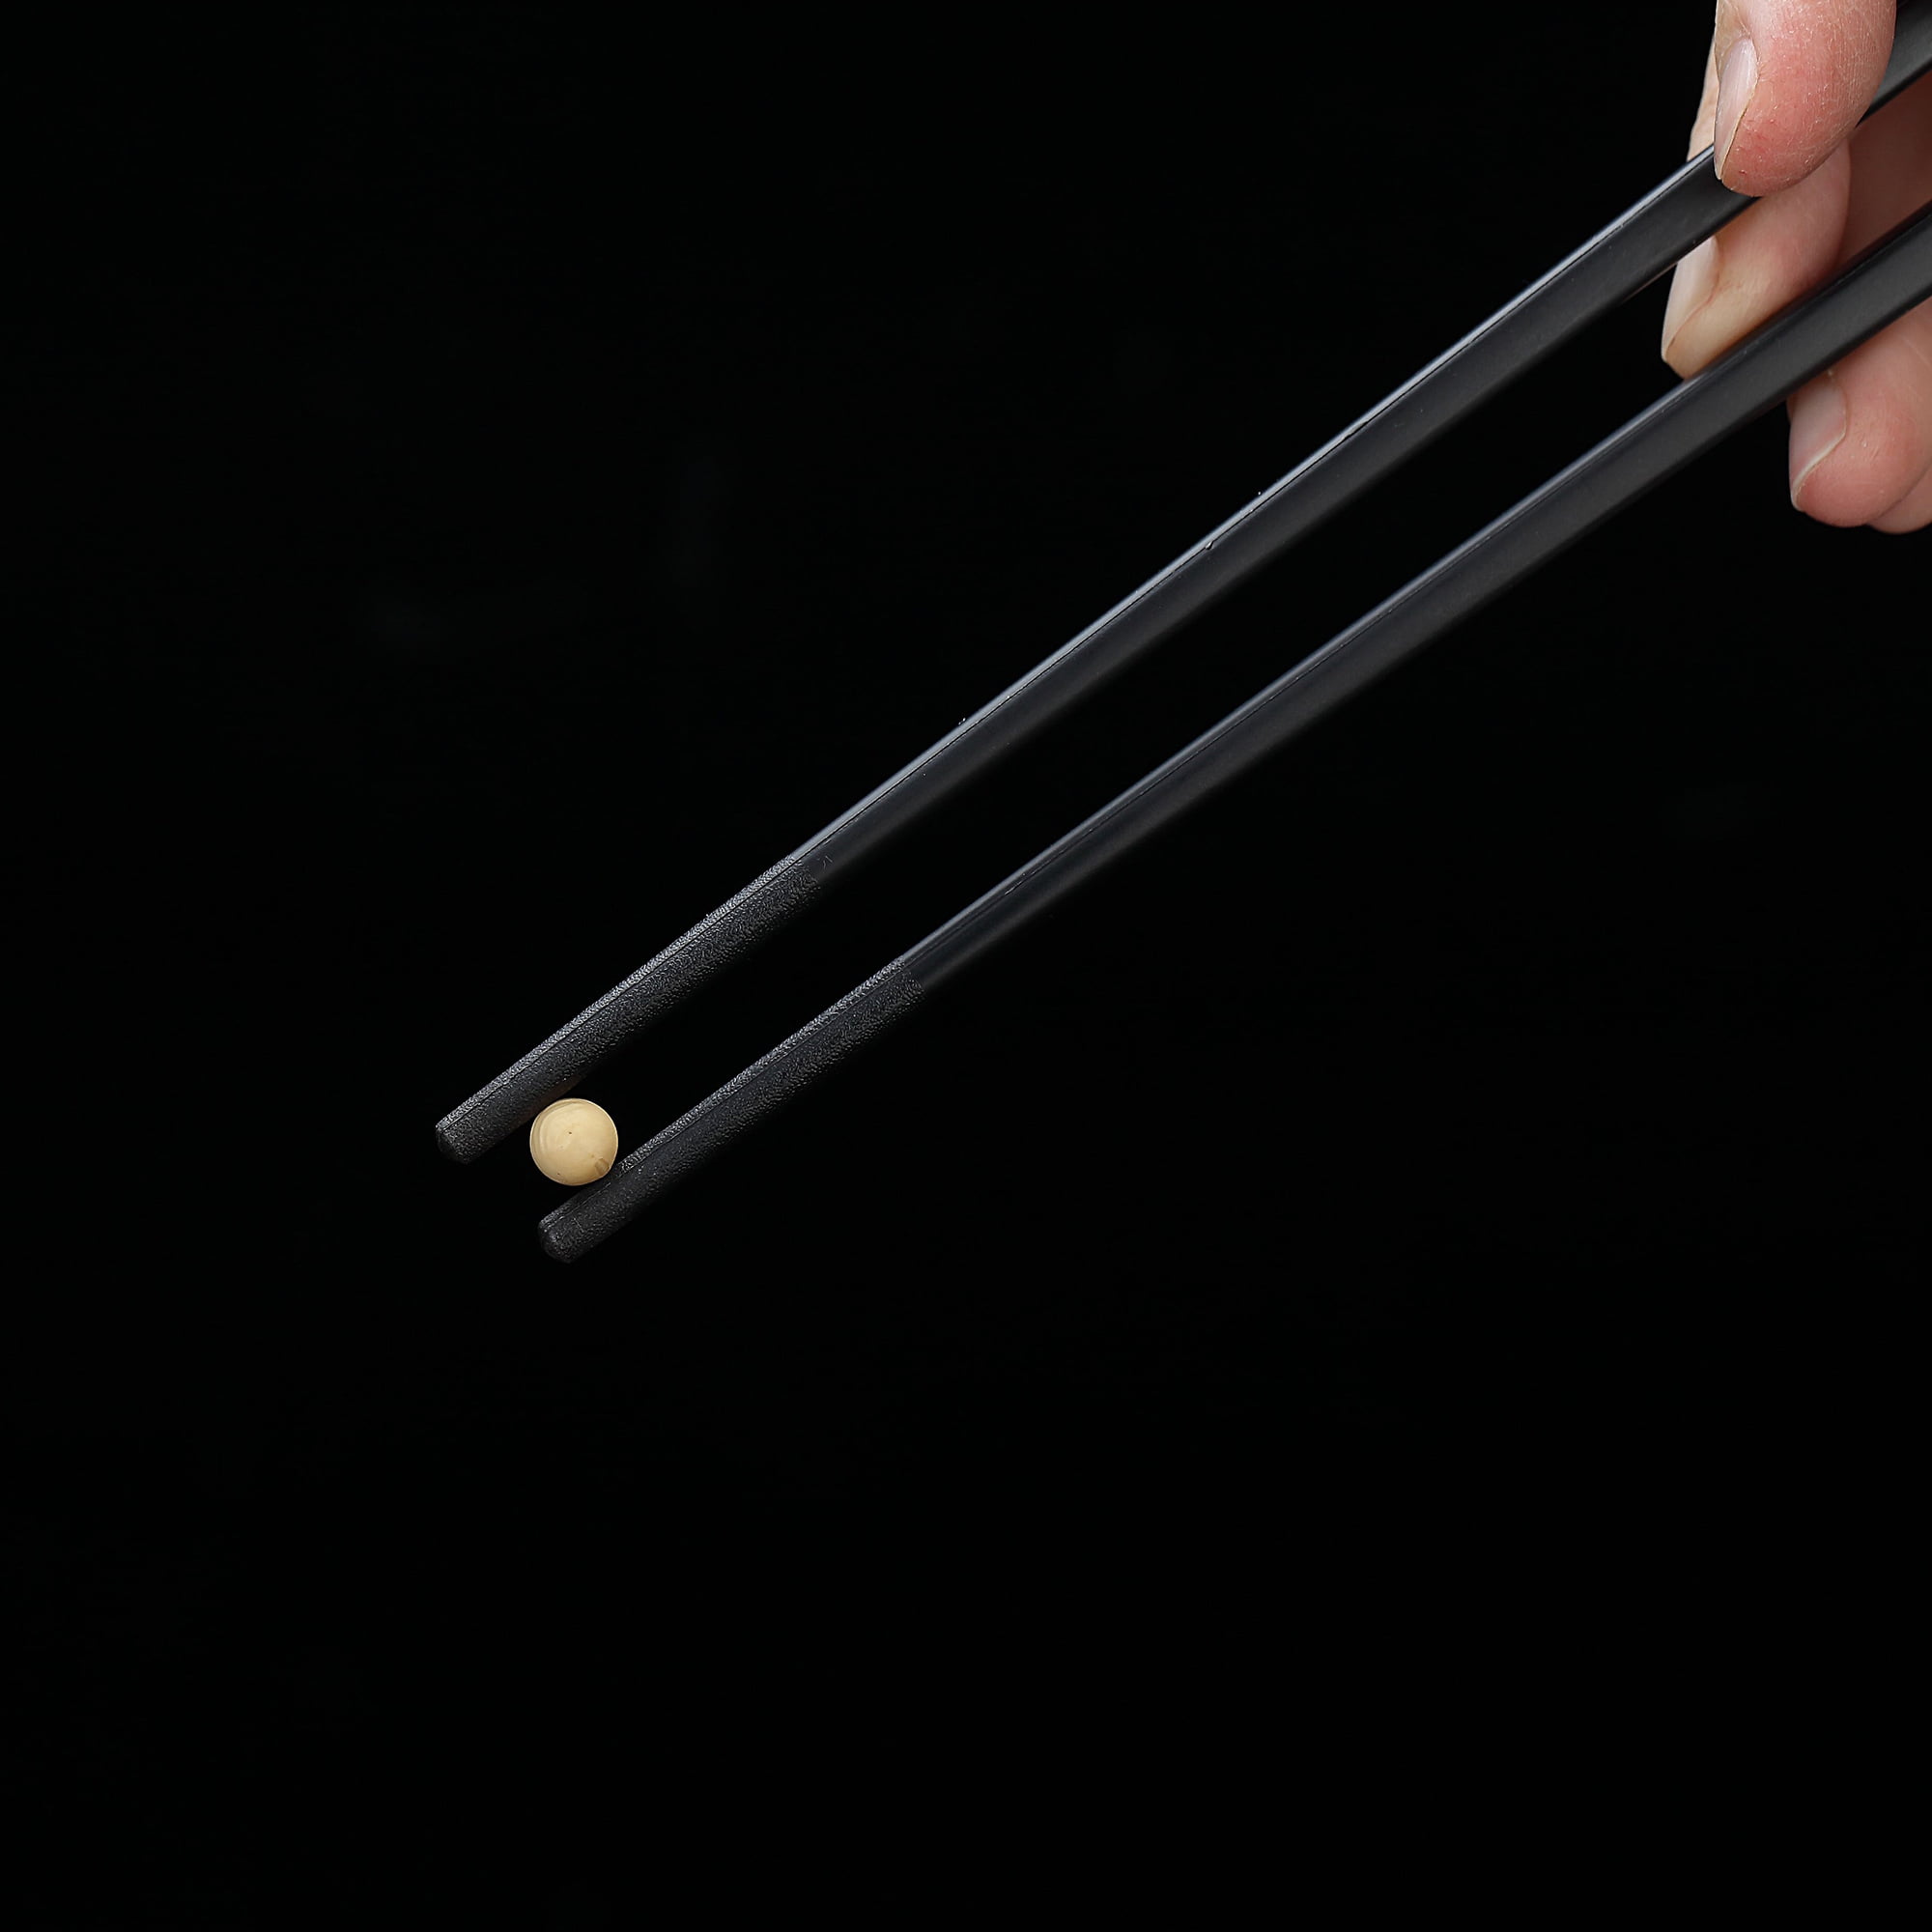 Chopsticks, fiberglass chopsticks are reusable, with chopstick rest,  dishwasher safe. Chinese luxury…See more Chopsticks, fiberglass chopsticks  are